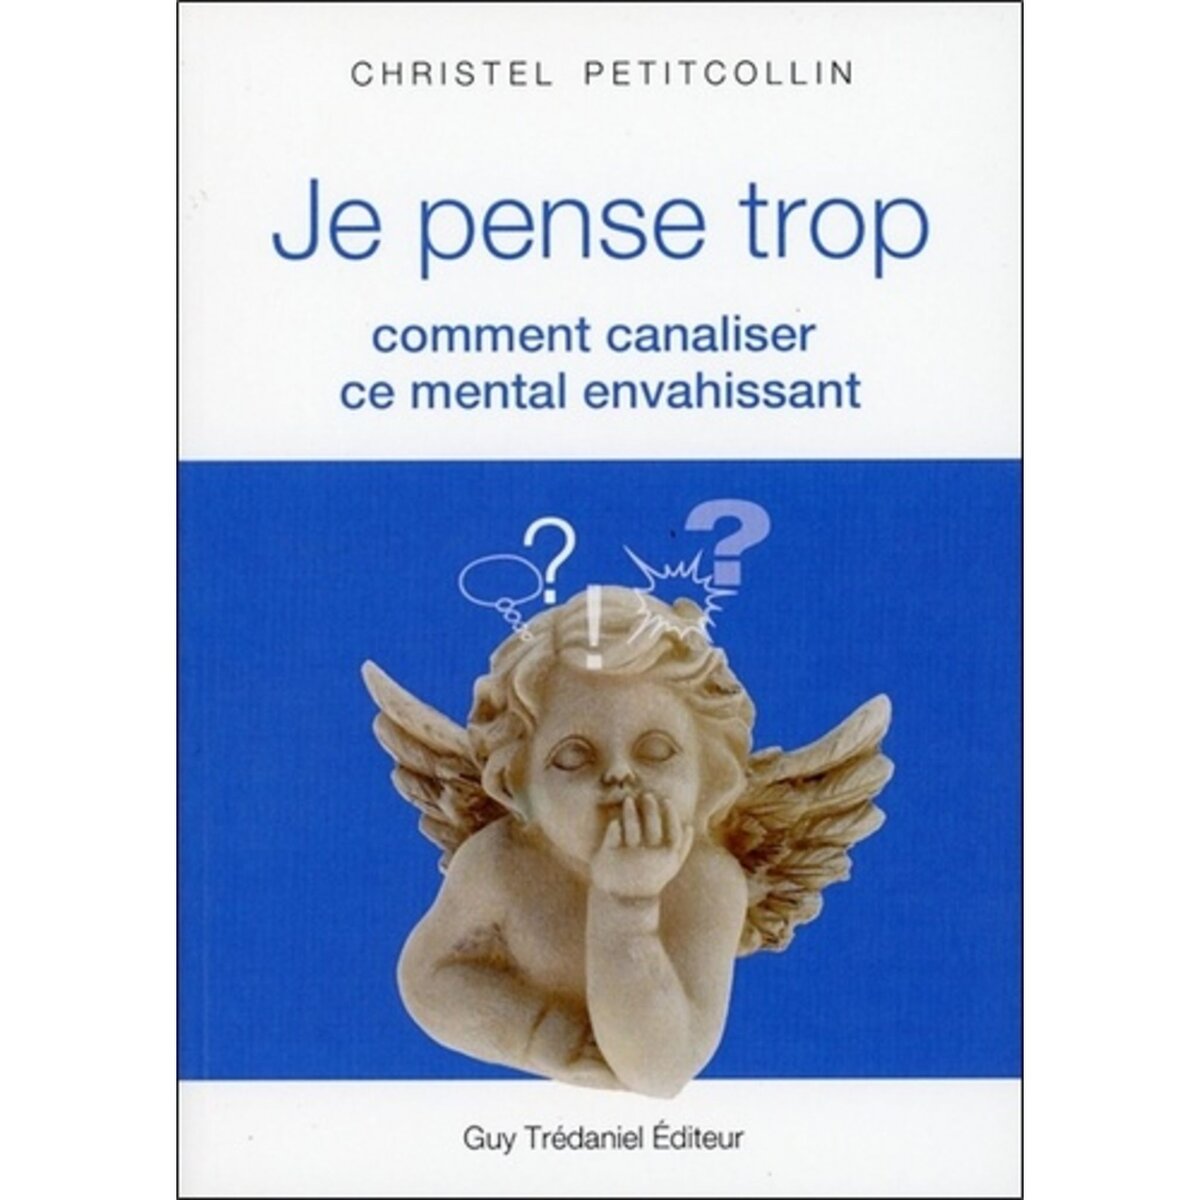  JE PENSE TROP. COMMENT CANALISER CE MENTAL ENVAHISSANT, Petitcollin Christel